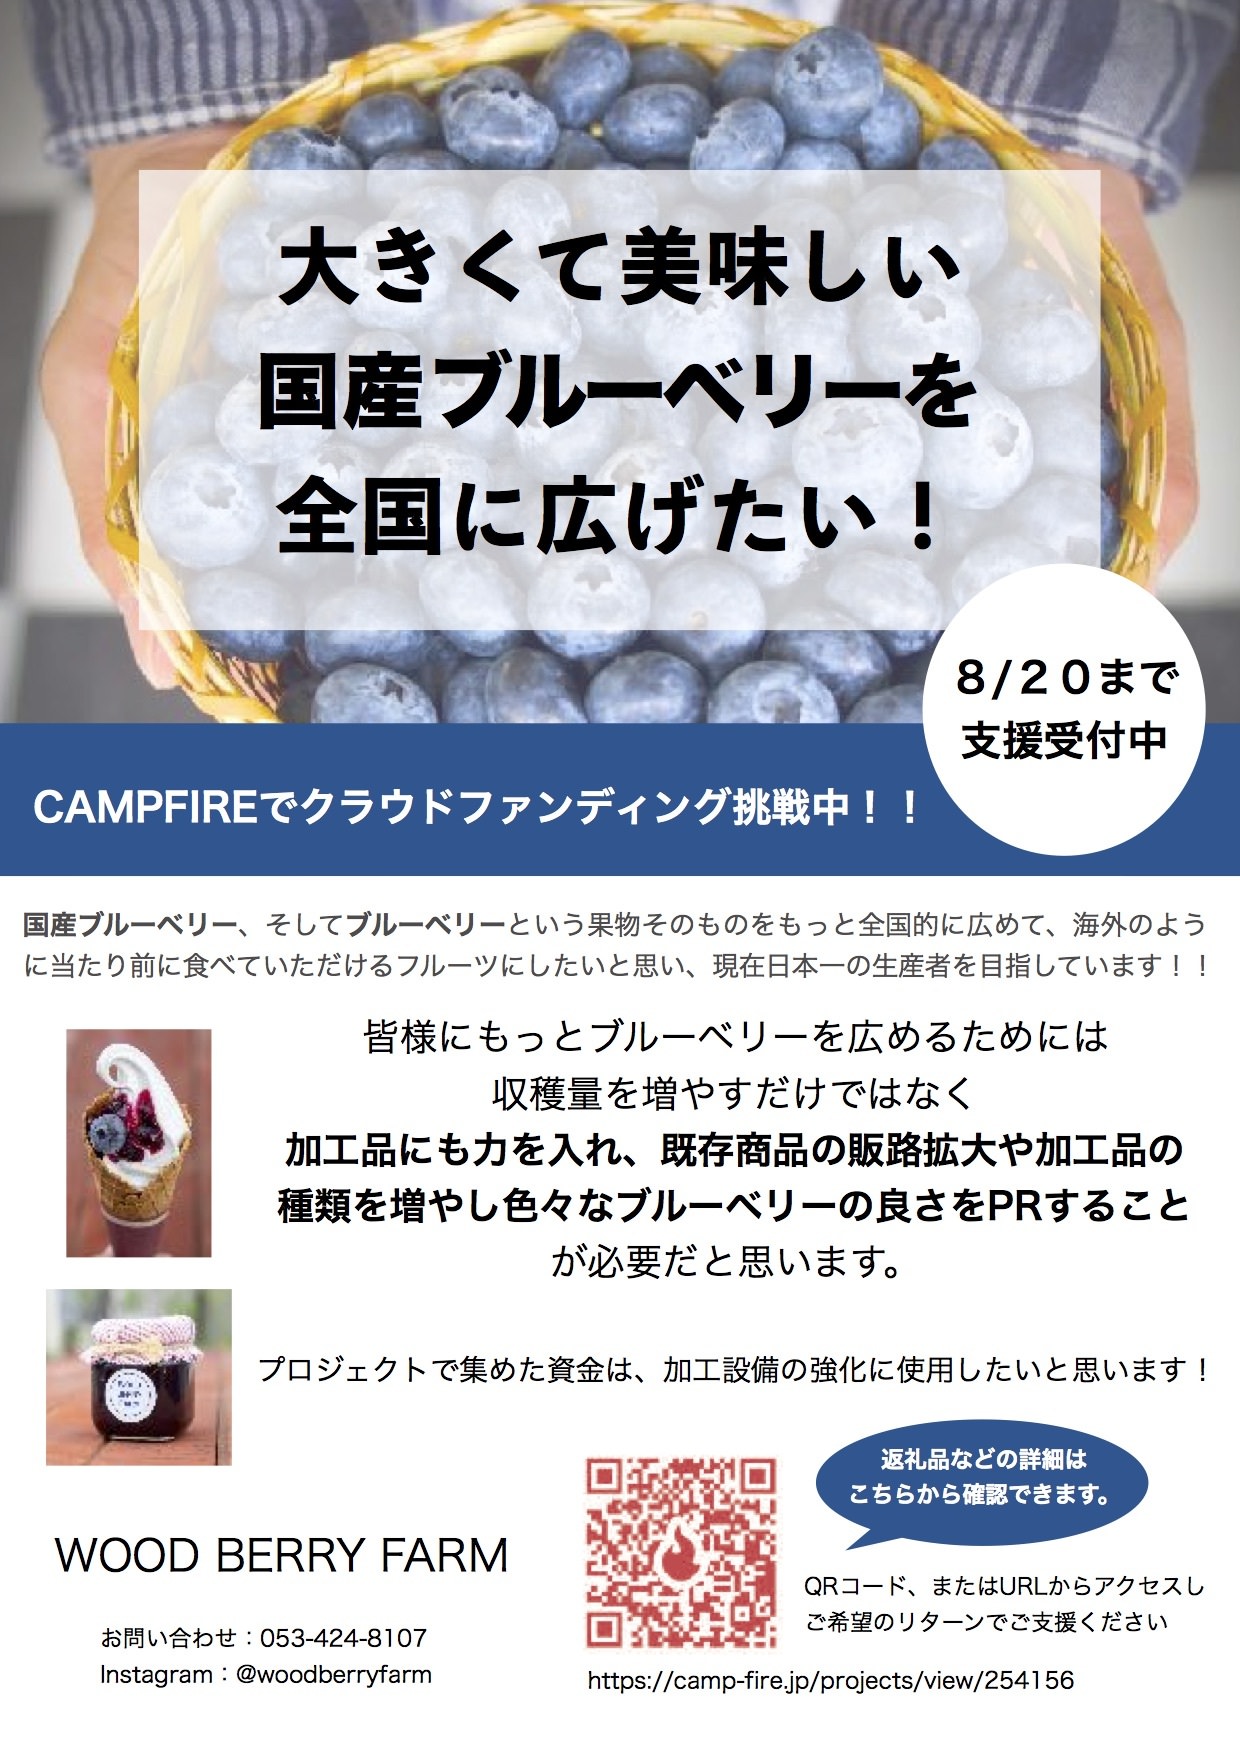 こんなに大きくておいしいブルーベリーがある！
静岡県浜松市のブルーベリーのクラウドファンディングを
8月20日まで実施